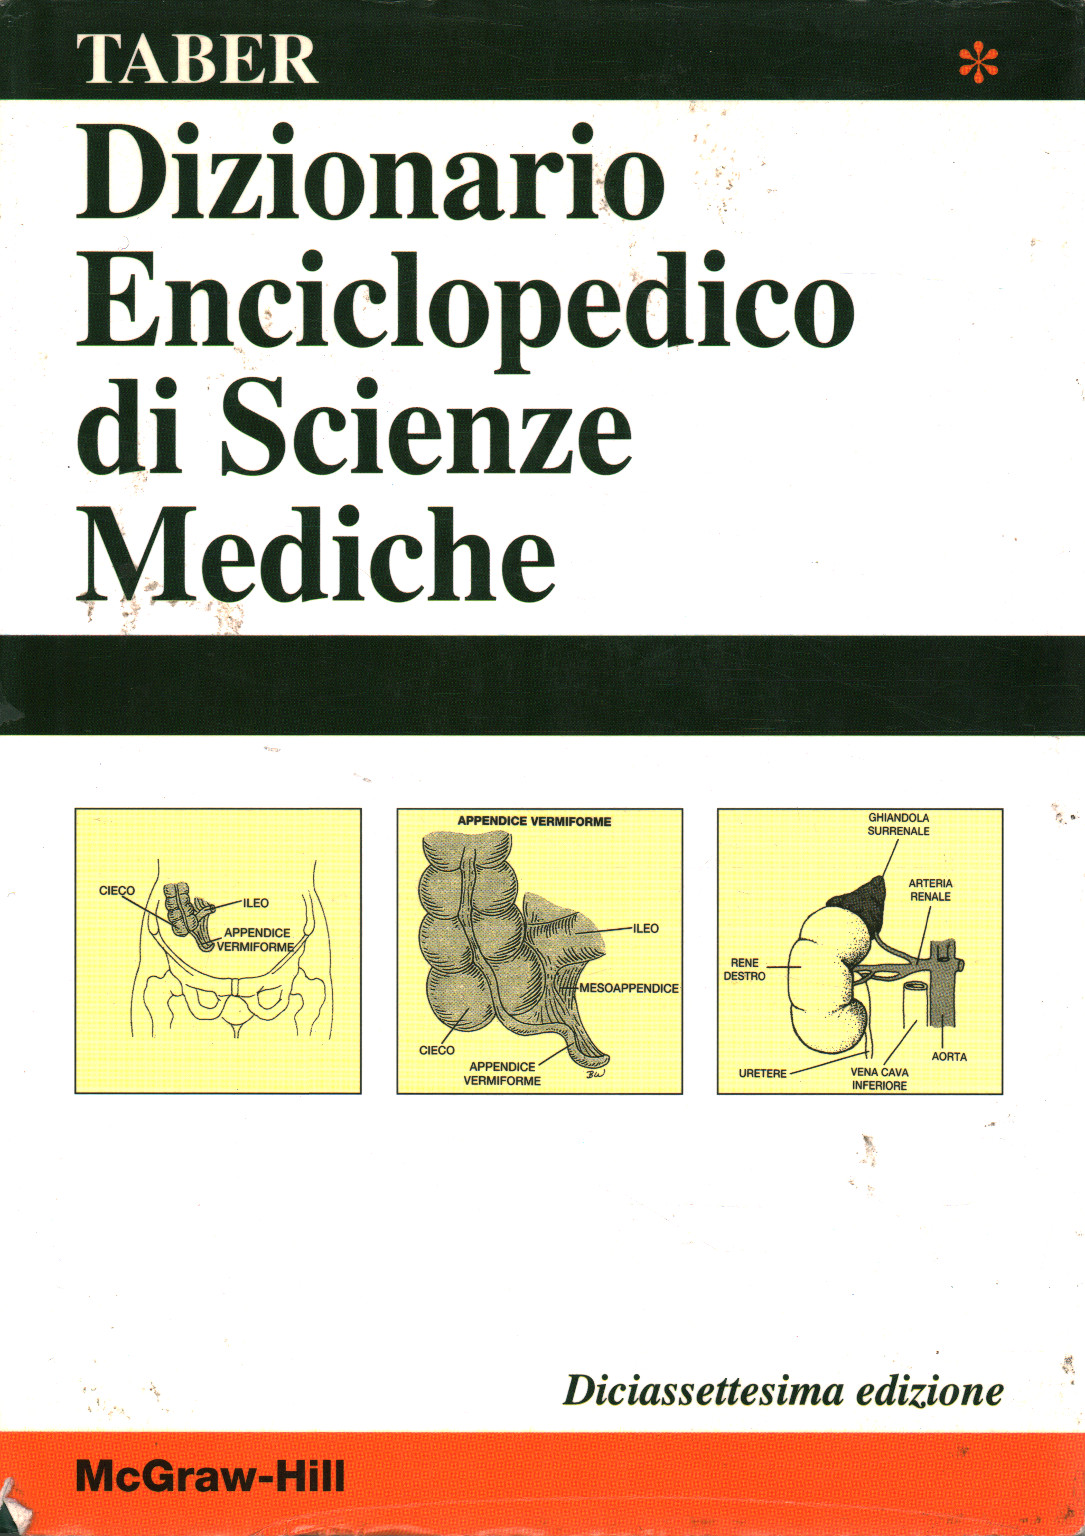 Dictionnaire encyclopédique des sciences médicales. Volum, Clayton L. Thomas